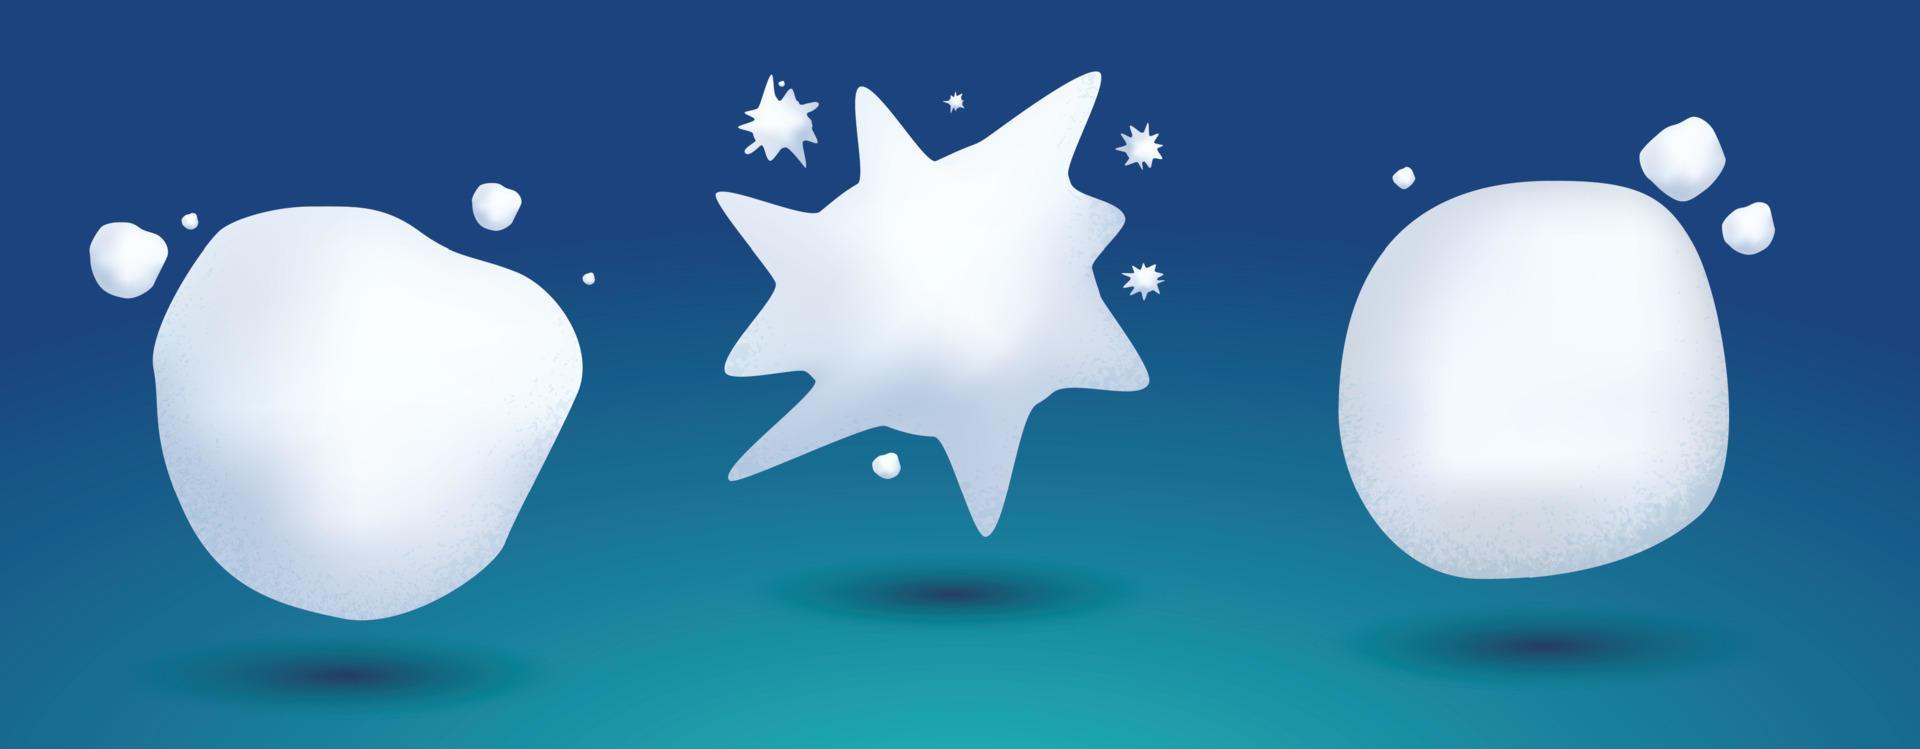 jeu de boules de neige. illustration vectorielle. boule de neige glacée blanche congelée sur fond bleu. vecteur